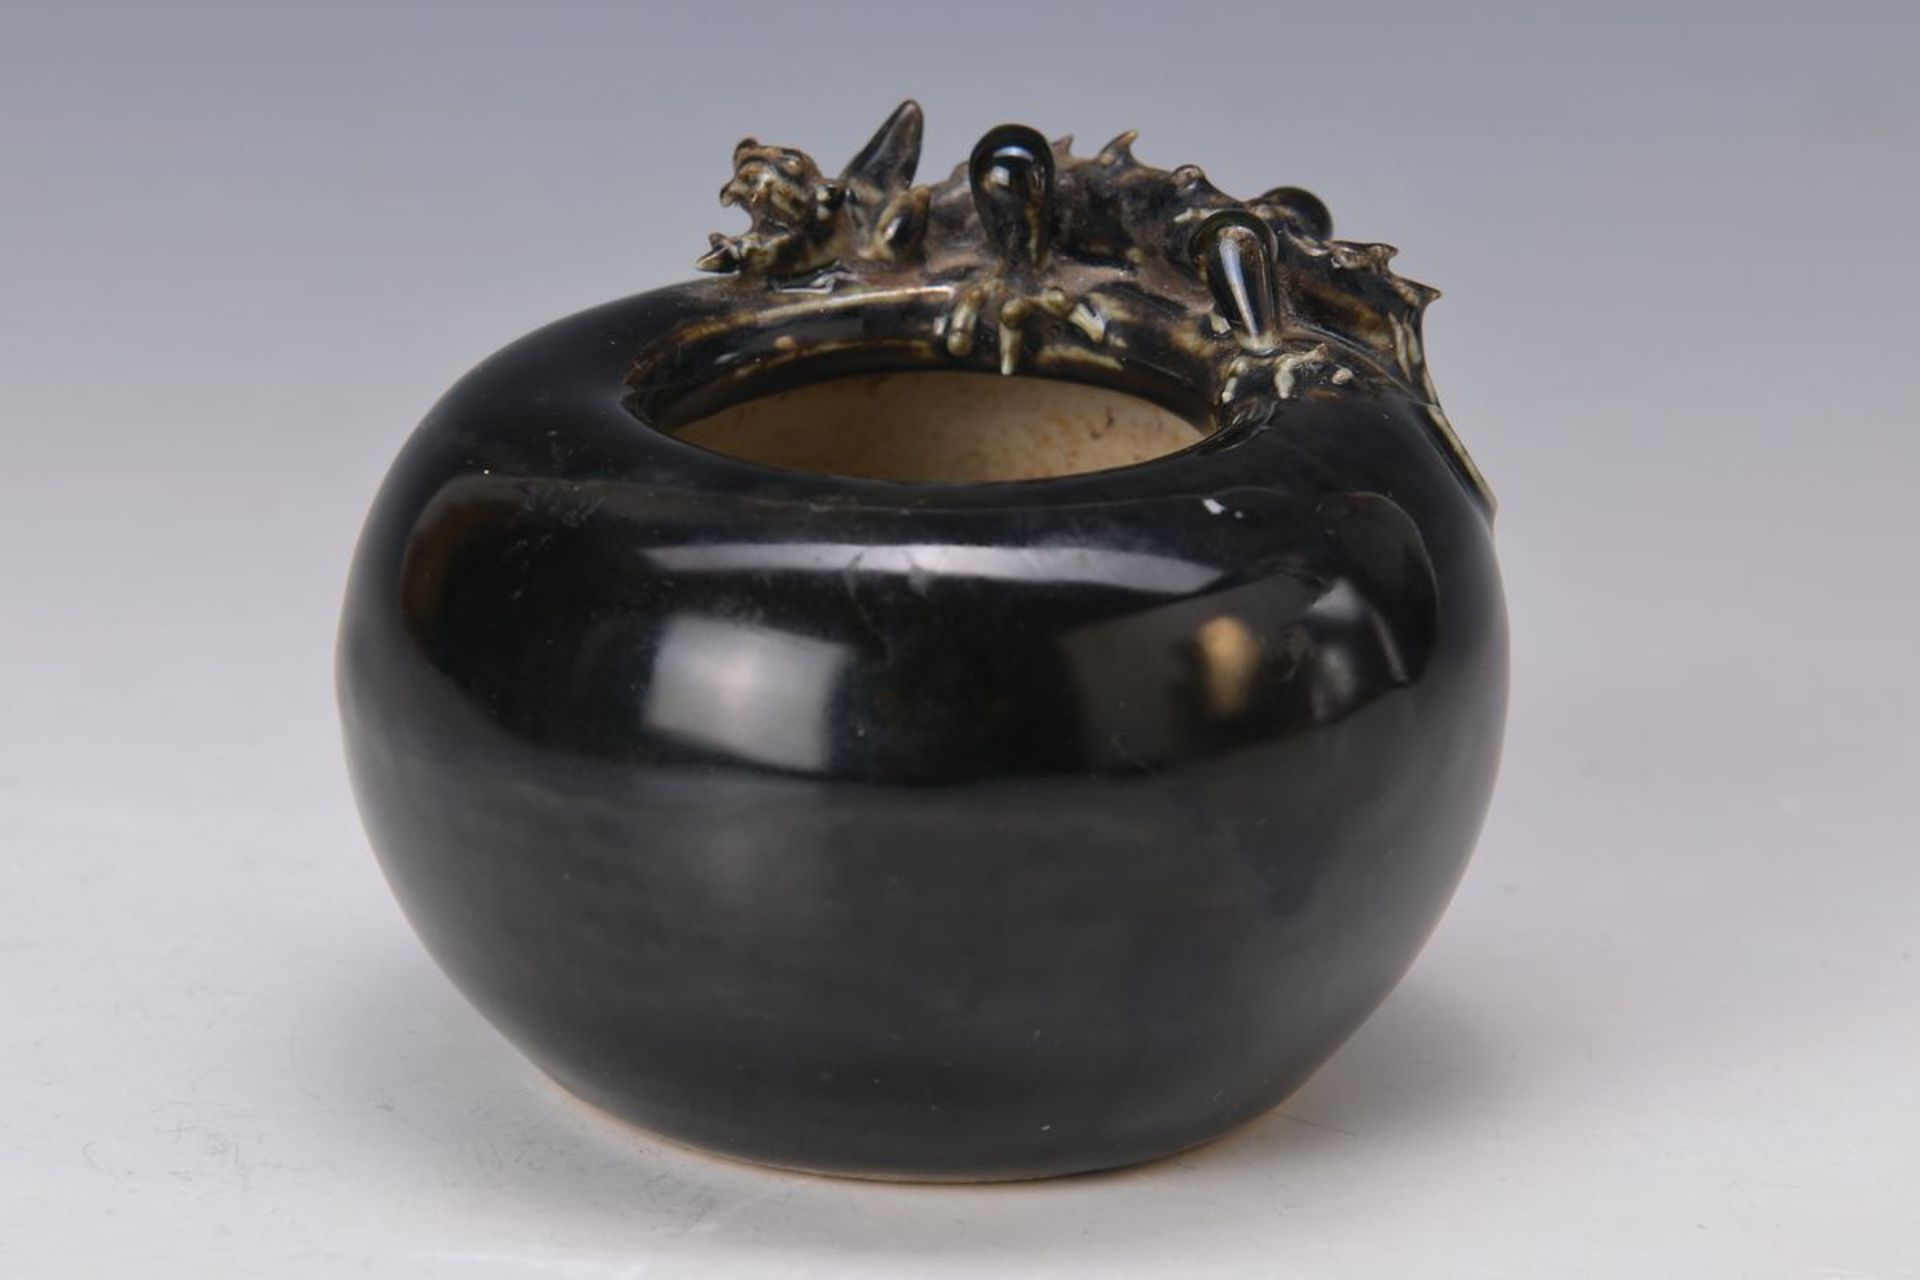 Ziergefäß, China, um 1800-50, Porzellan, heller Scherben, schwarze, an den Rändern minimal